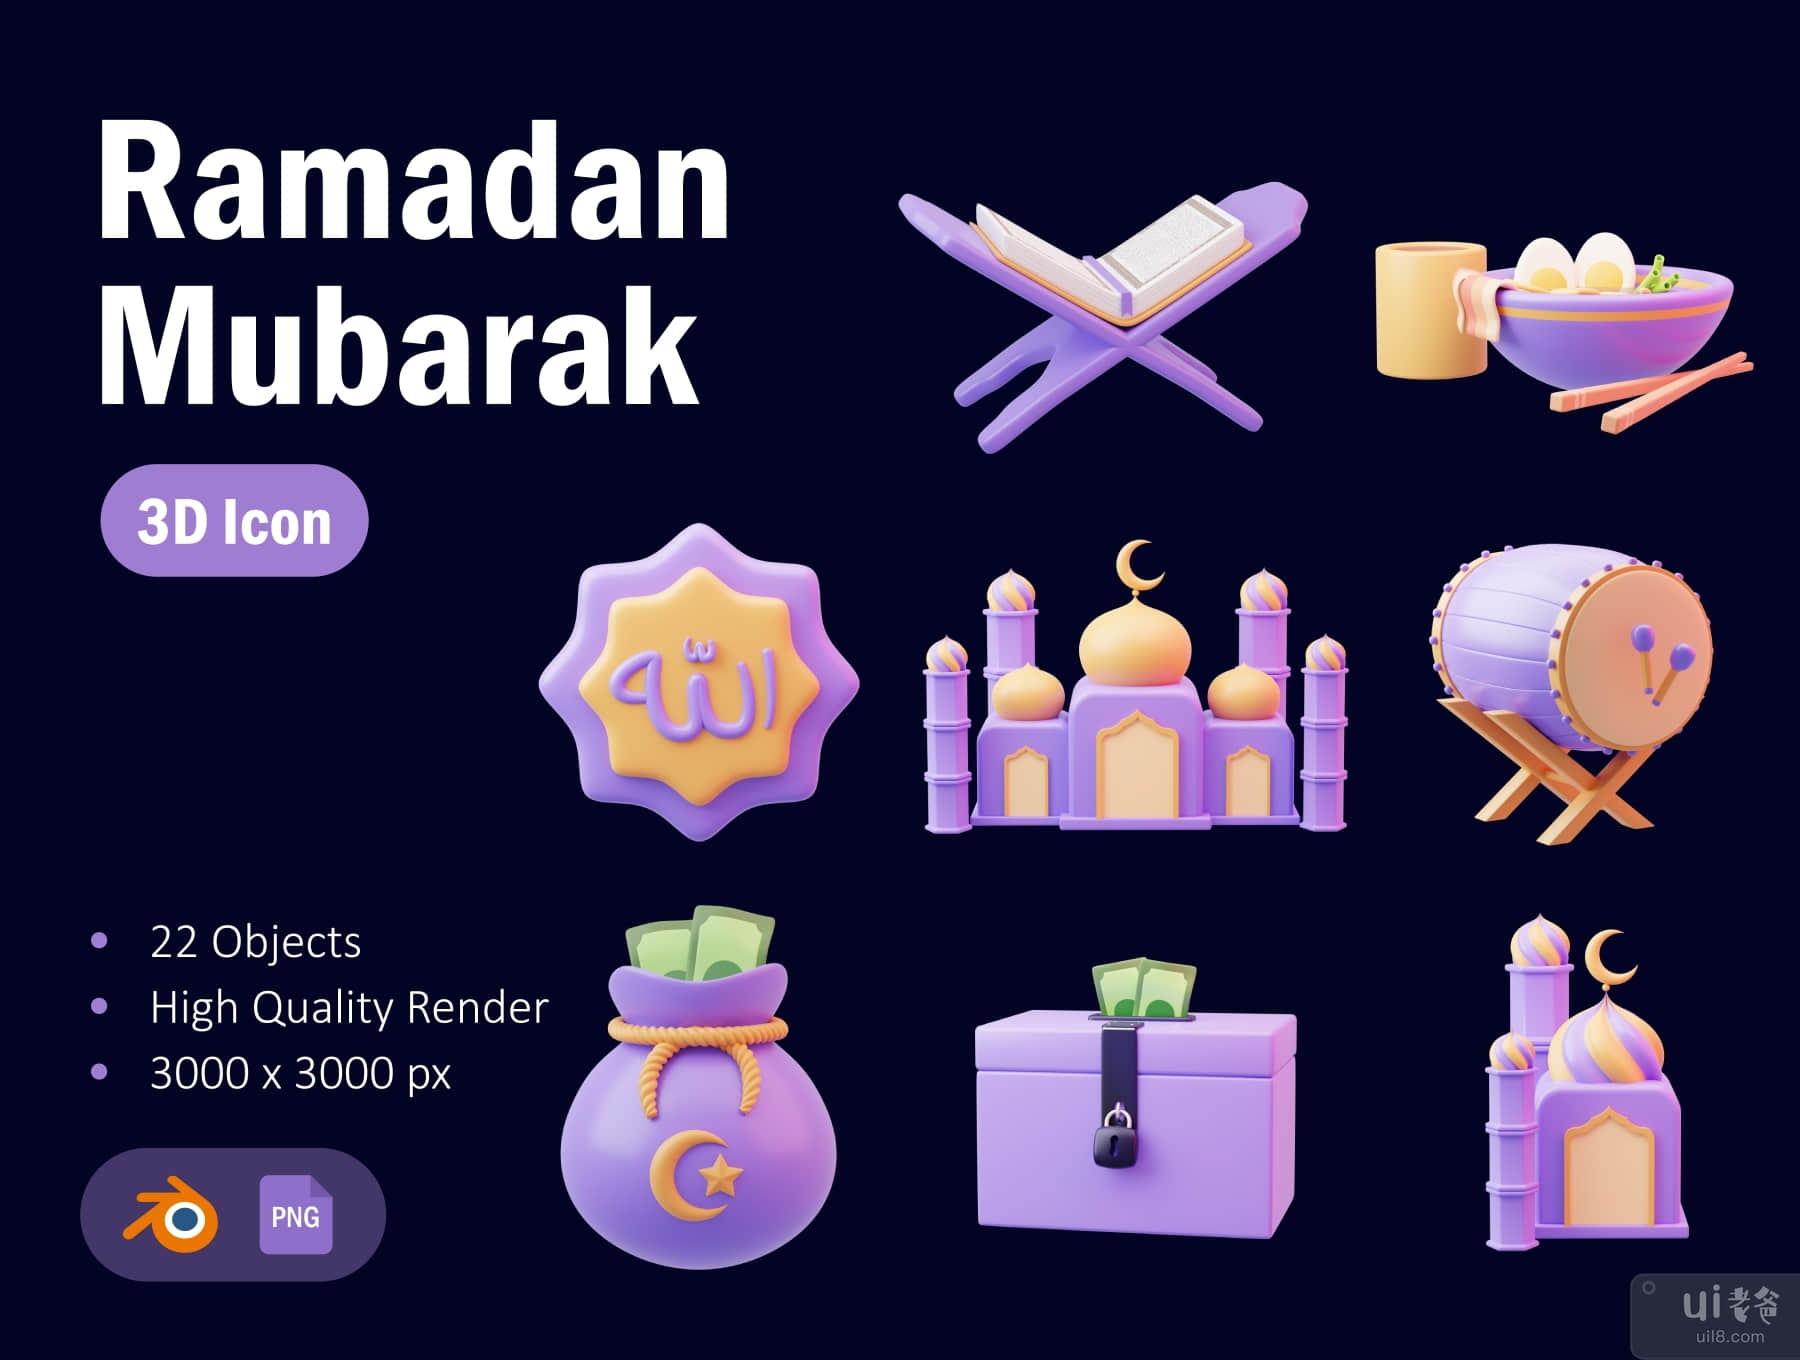 斋月穆巴拉克 3D 资产 (Ramadan Mubarak 3D Asset)插图5